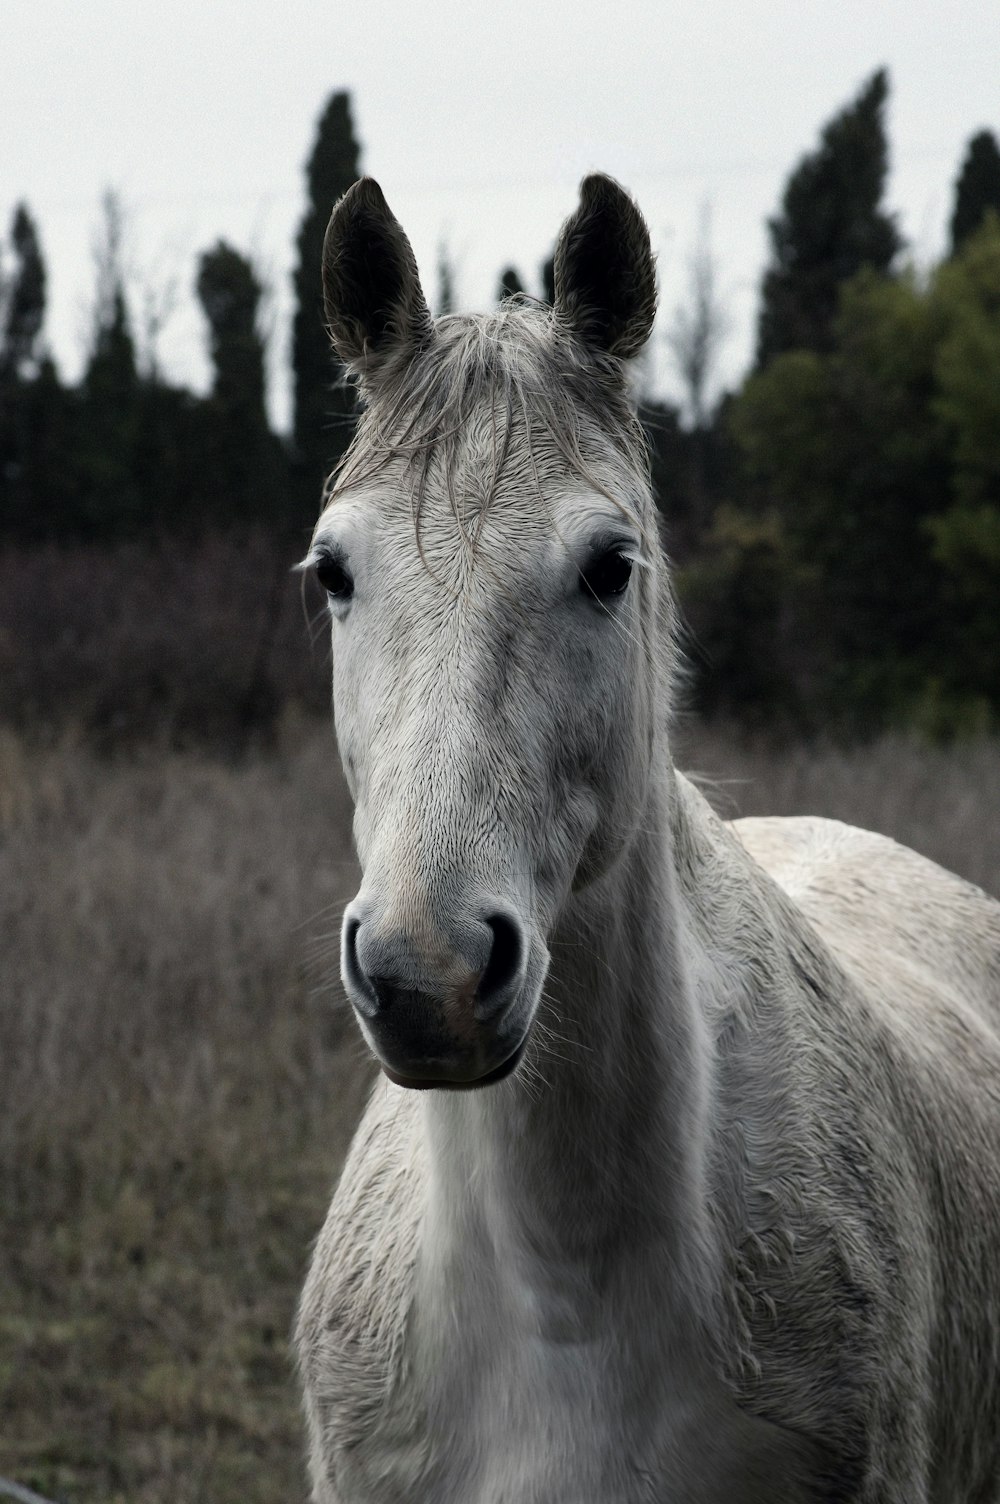 cavalo branco no campo marrom da grama durante o dia